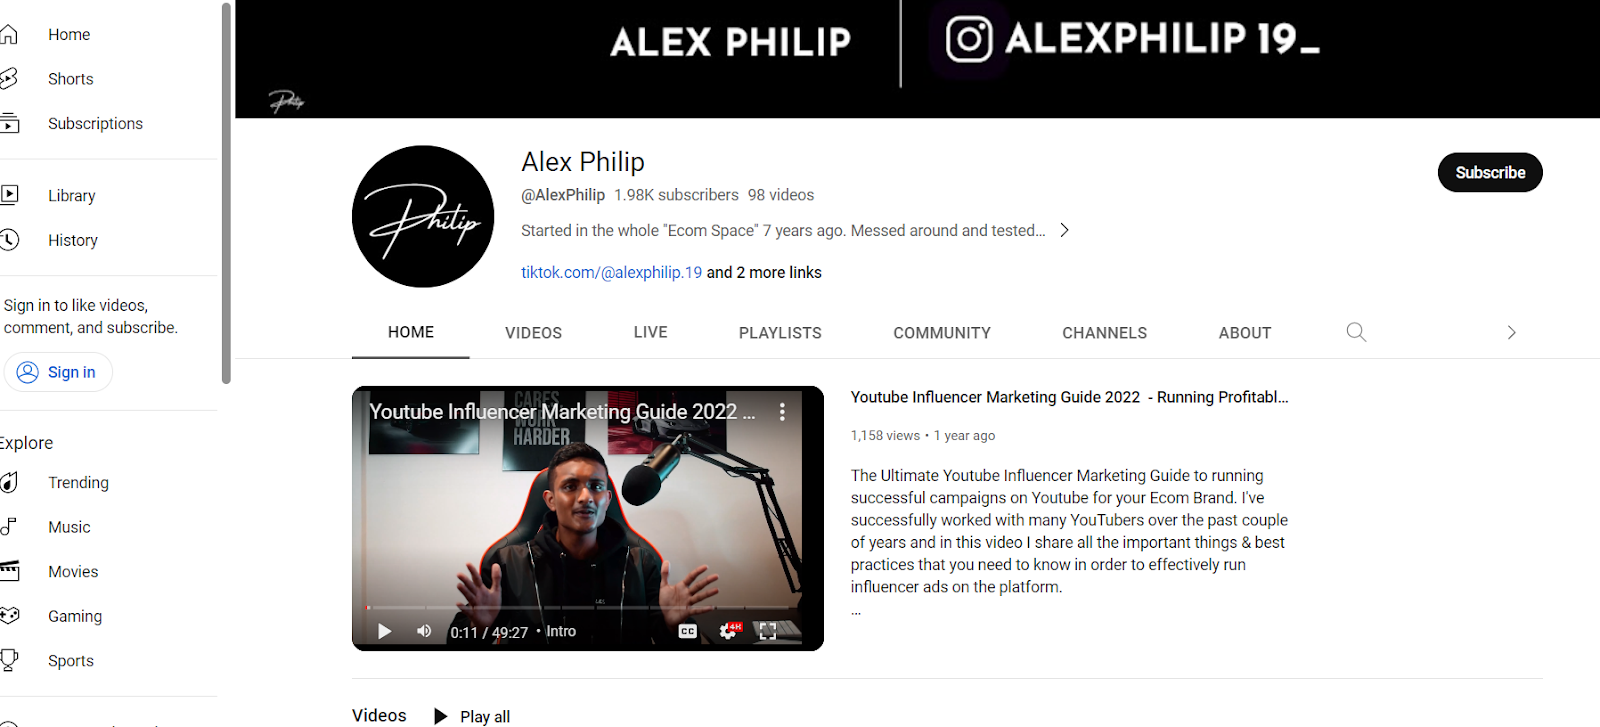 alex phillip